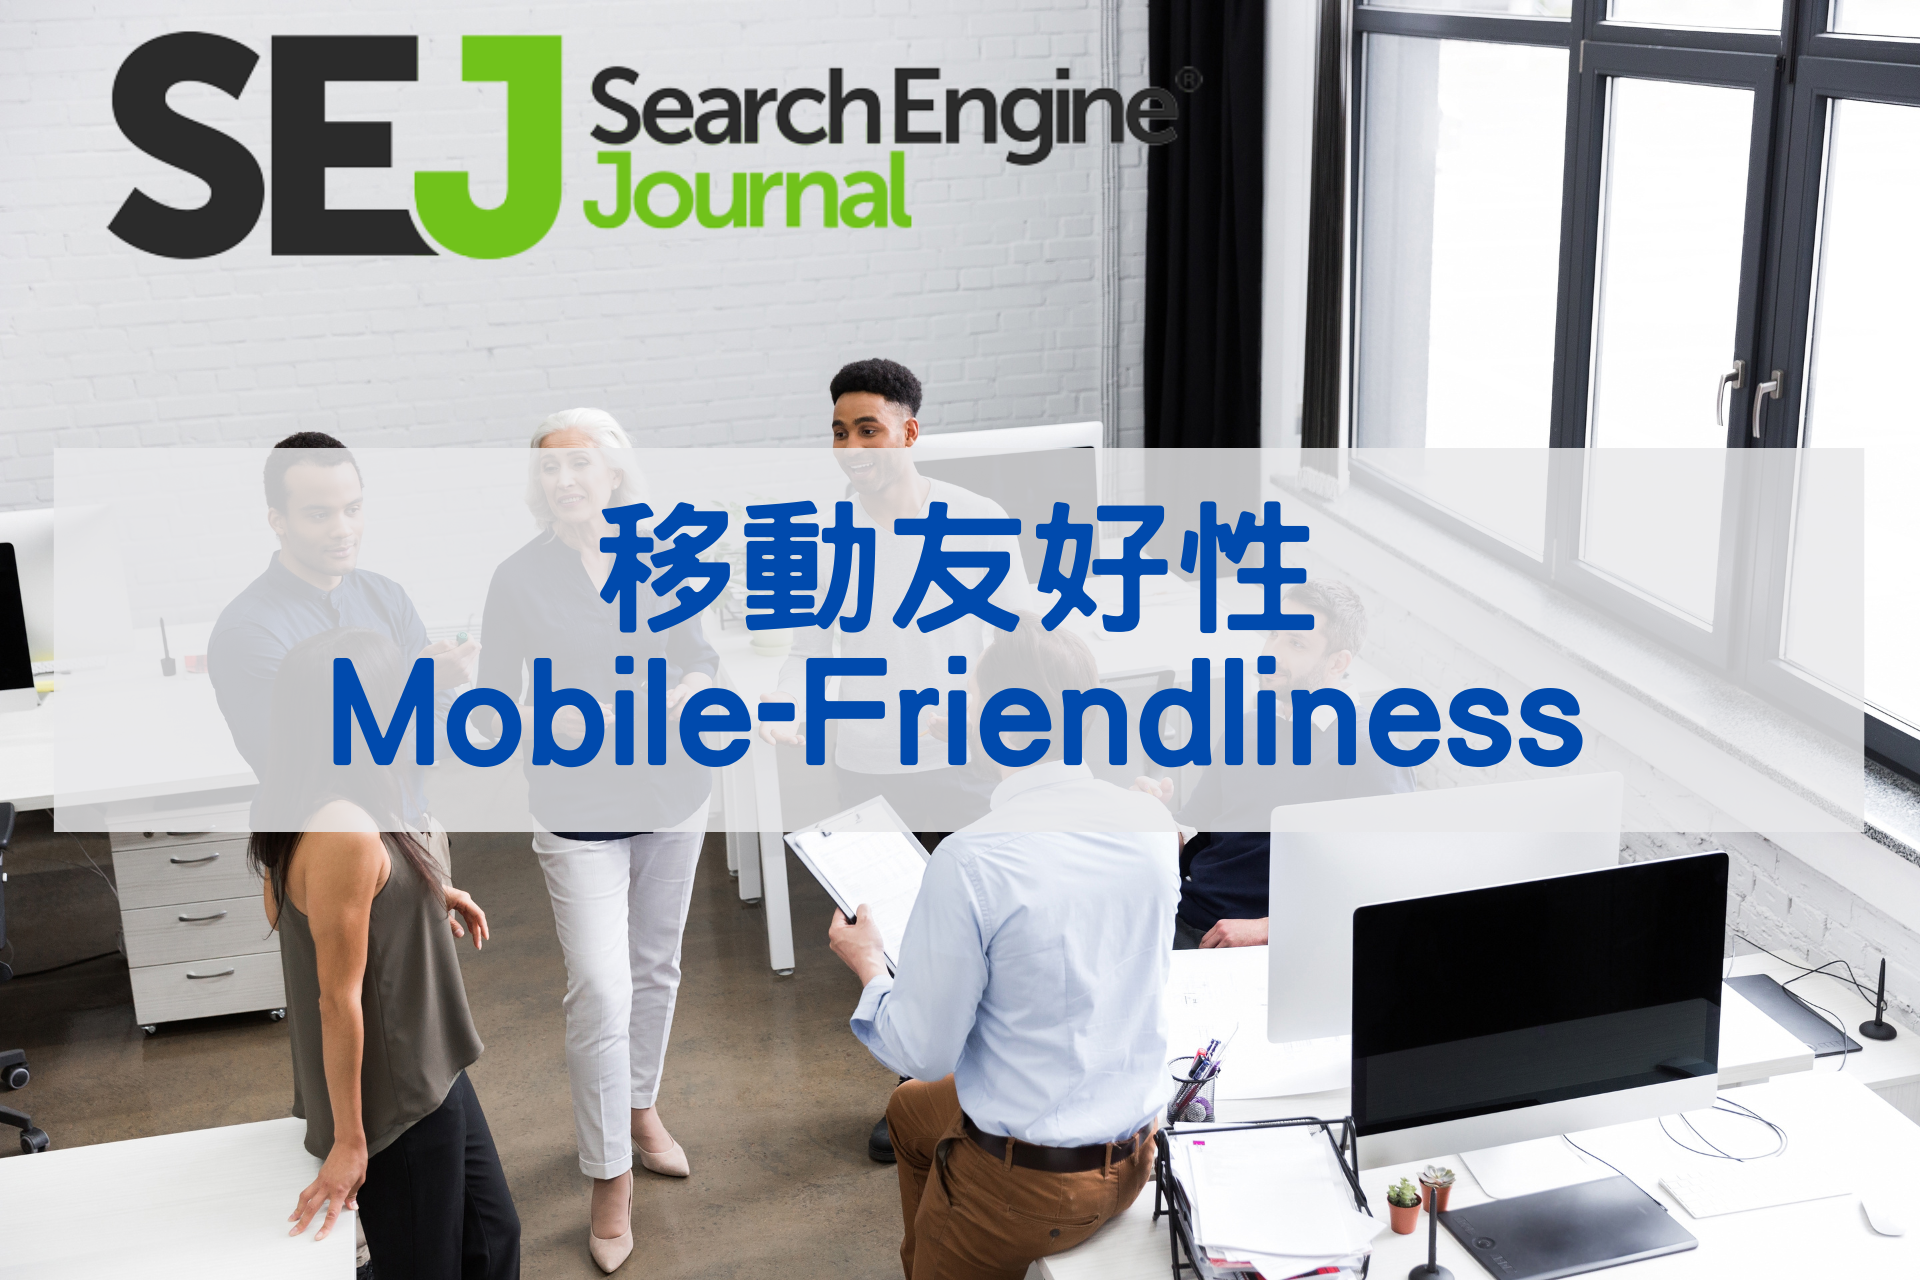 65.移動友好性(Mobile-Friendliness)